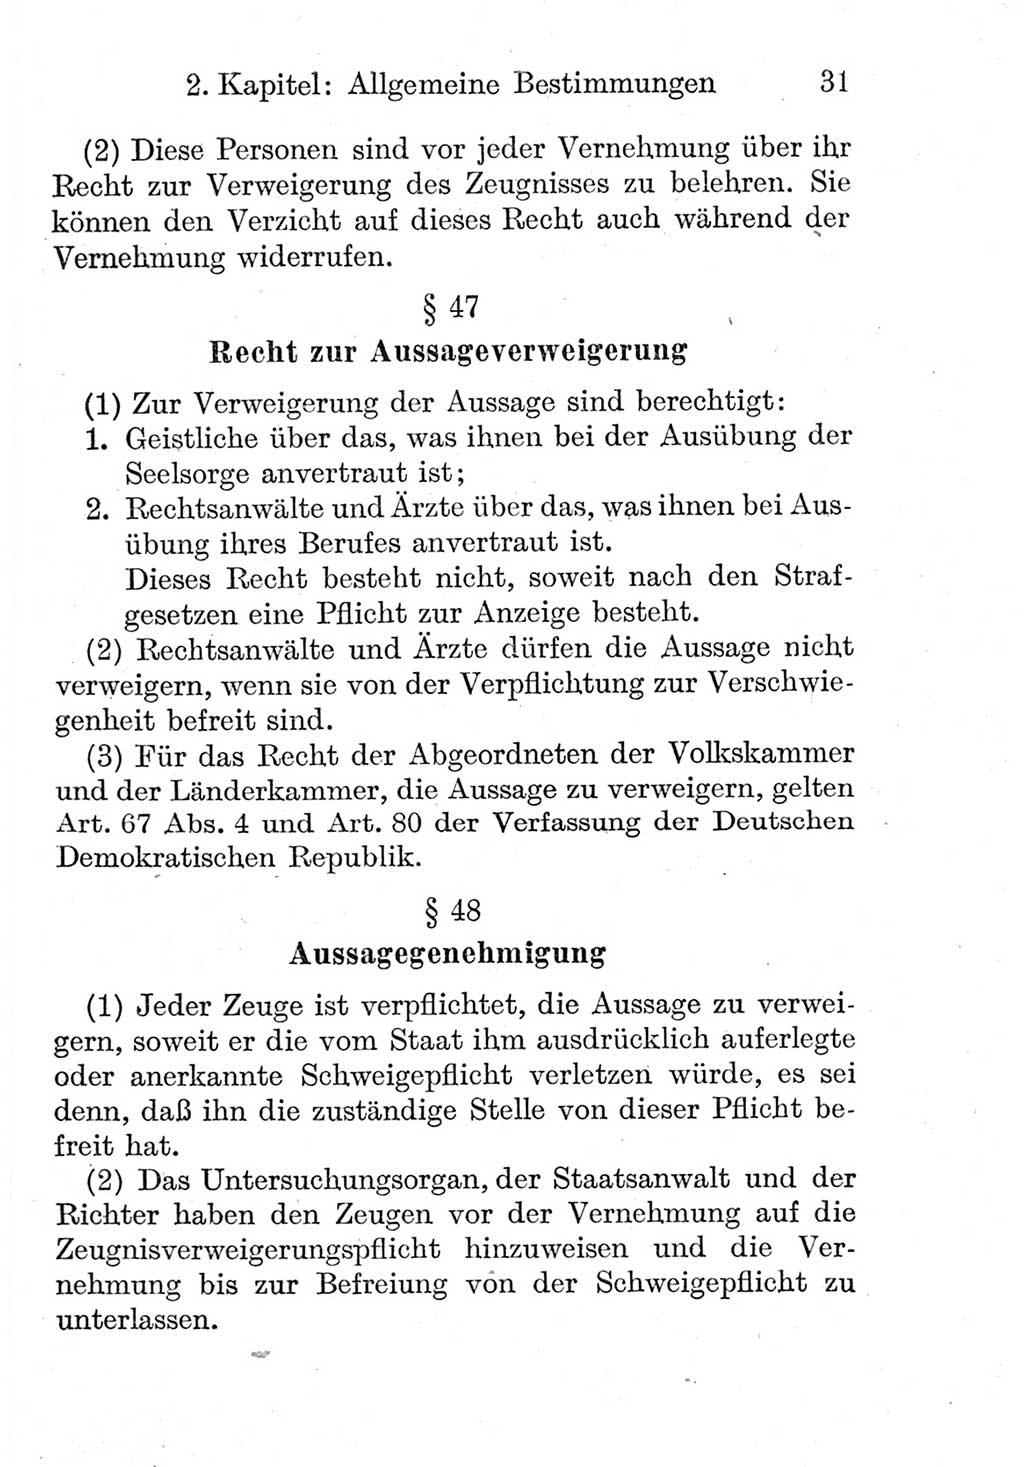 Strafprozeßordnung (StPO), Gerichtsverfassungsgesetz (GVG), Staatsanwaltsgesetz (StAG) und Jugendgerichtsgesetz (JGG) [Deutsche Demokratische Republik (DDR)] 1952, Seite 31 (StPO GVG StAG JGG DDR 1952, S. 31)